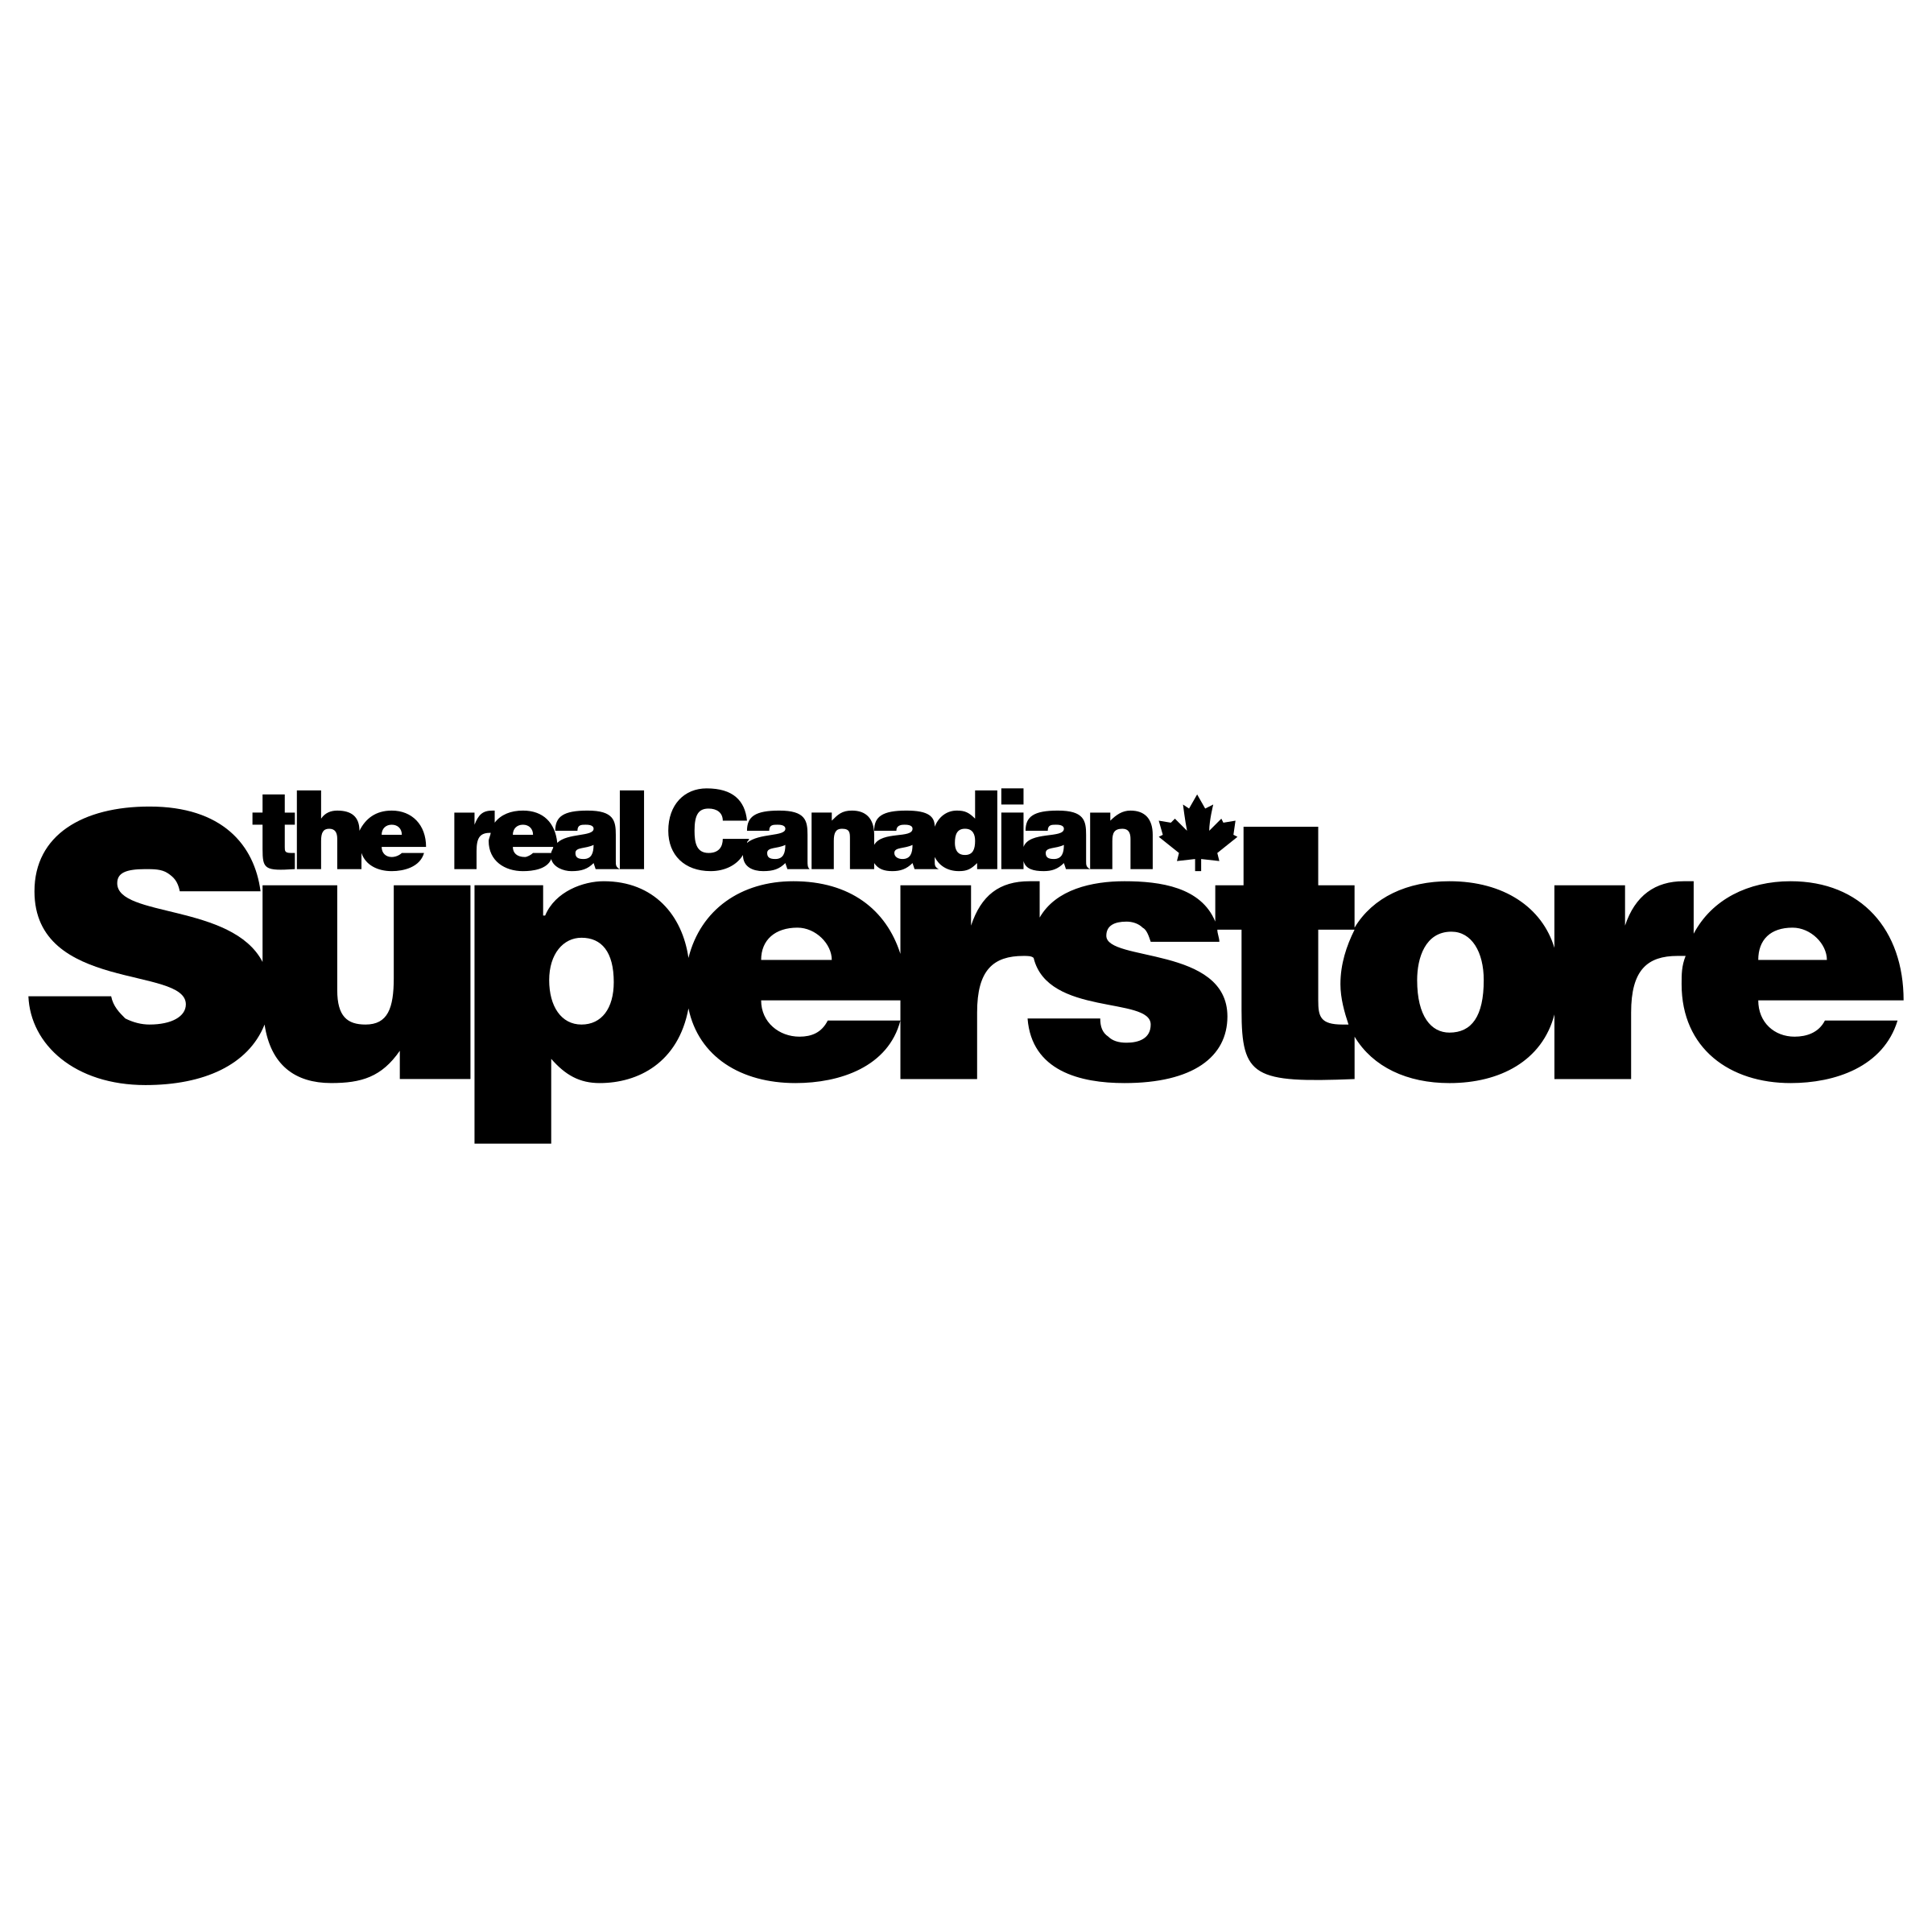 Superstore Logo - Superstore Logo PNG Transparent & SVG Vector